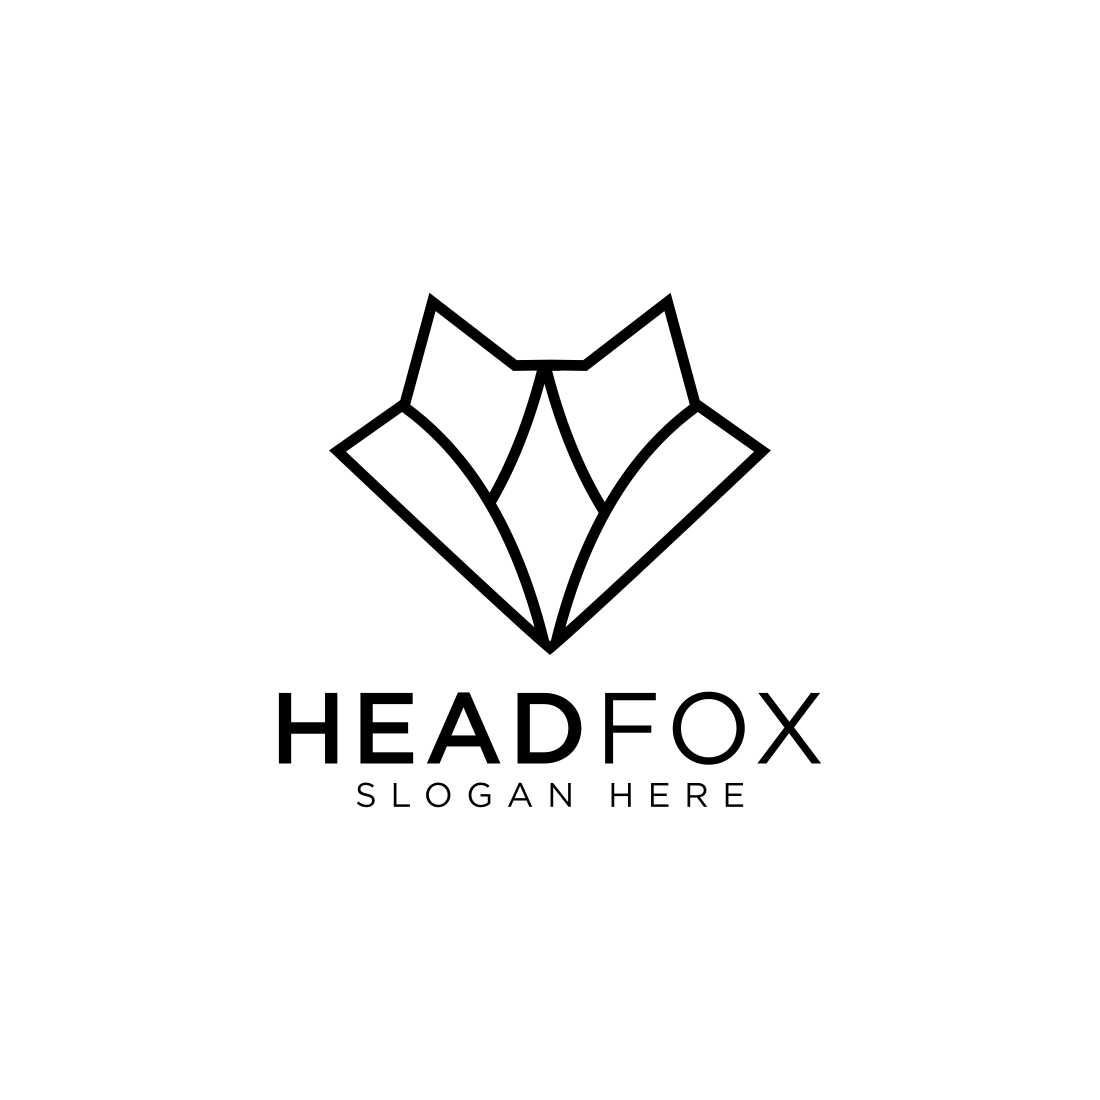 head fox logo design vector preview image.